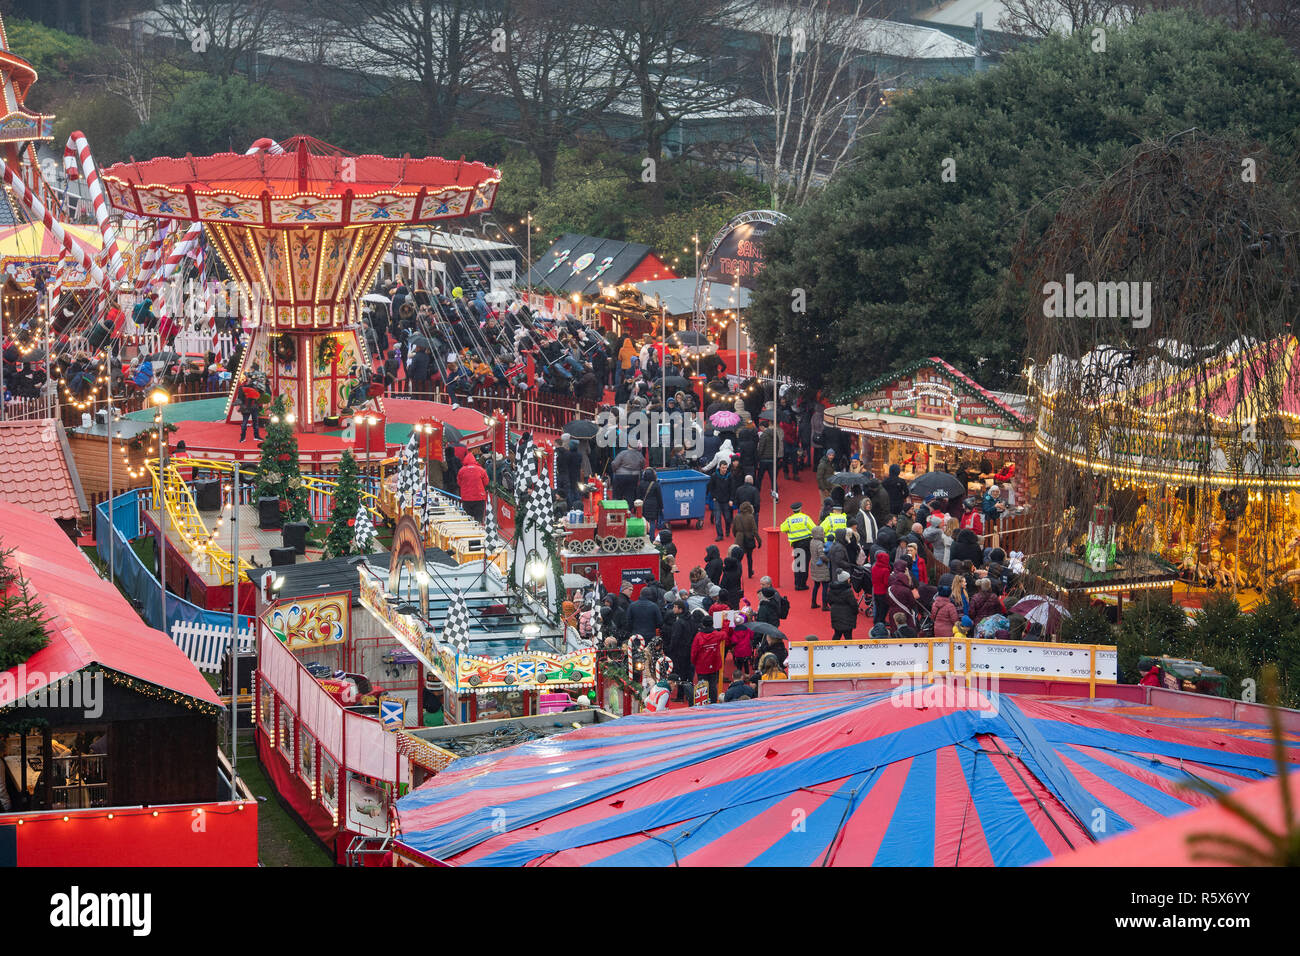 Mercado de Navidad de Edimburgo, la calle Princes Street Gardens, navidad, multitudes, llena Foto de stock